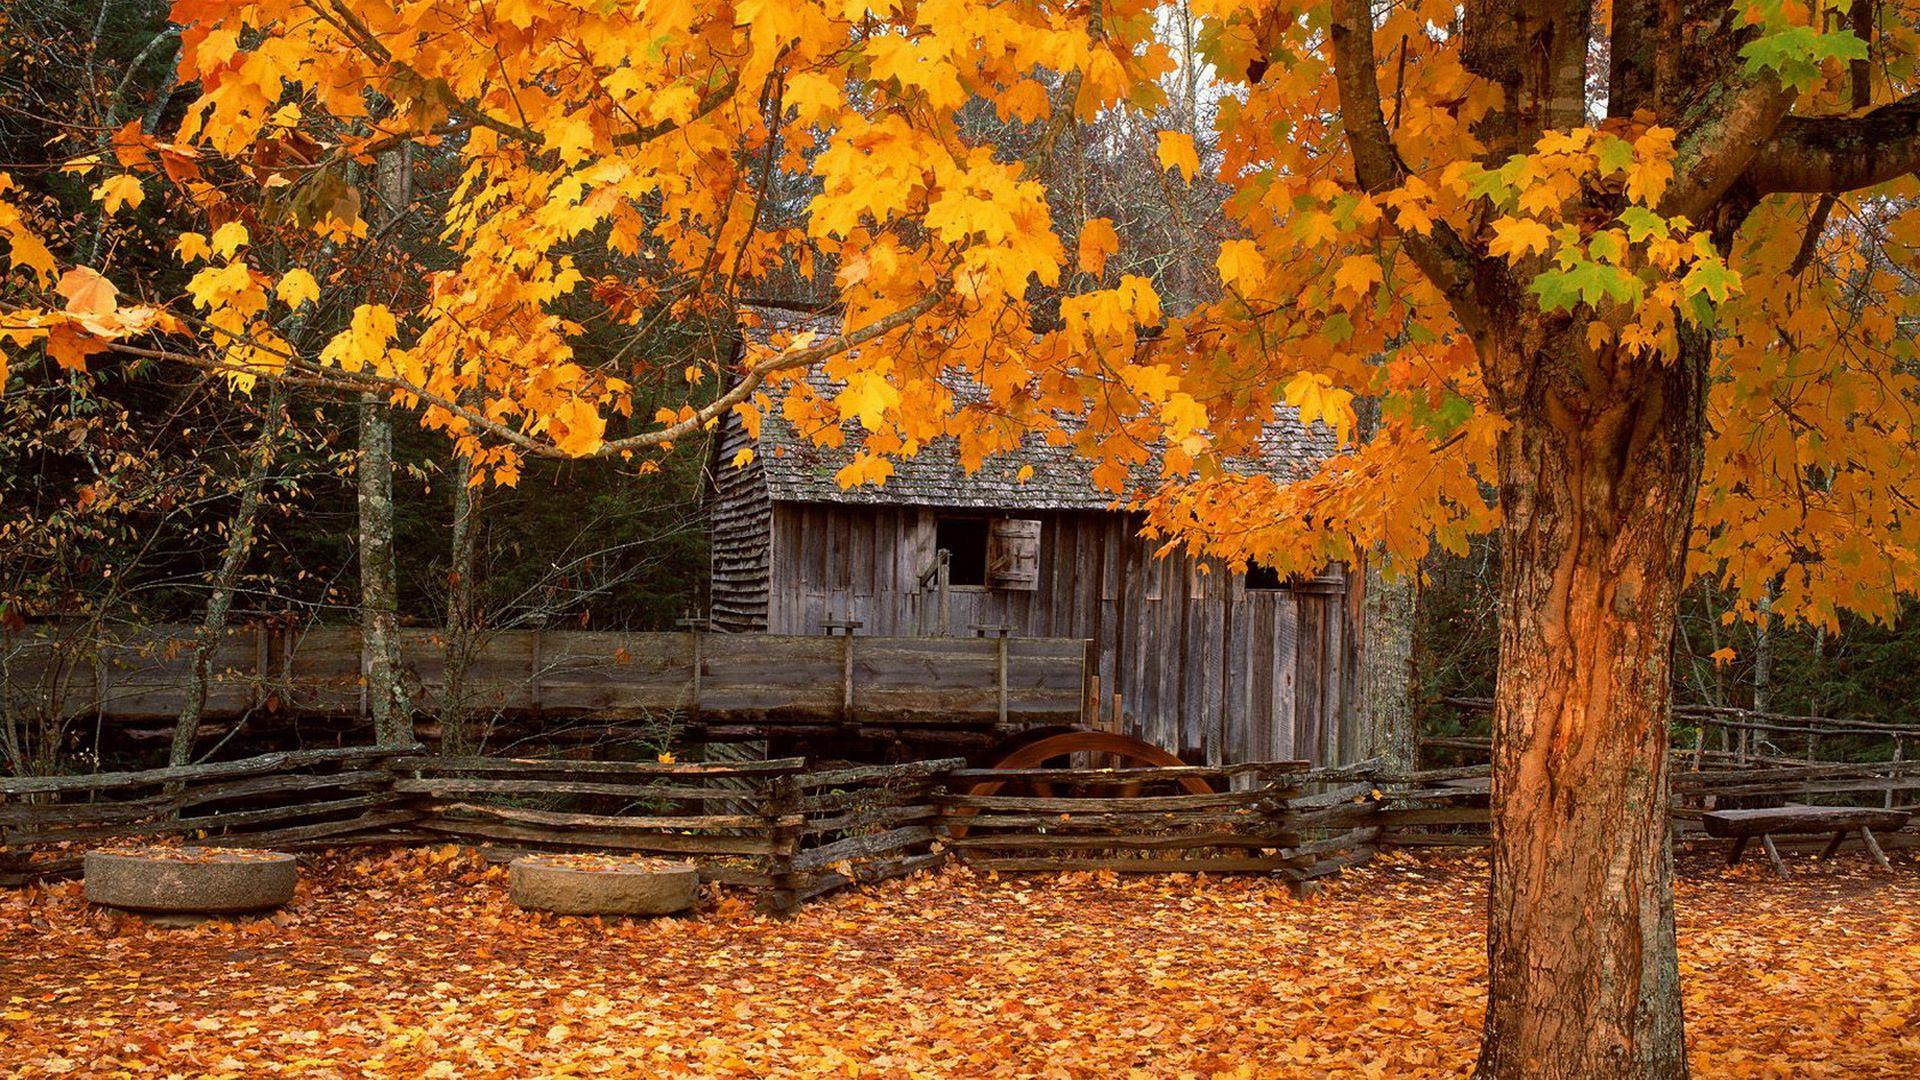 Autumn Season HD Wallpaper Free Download